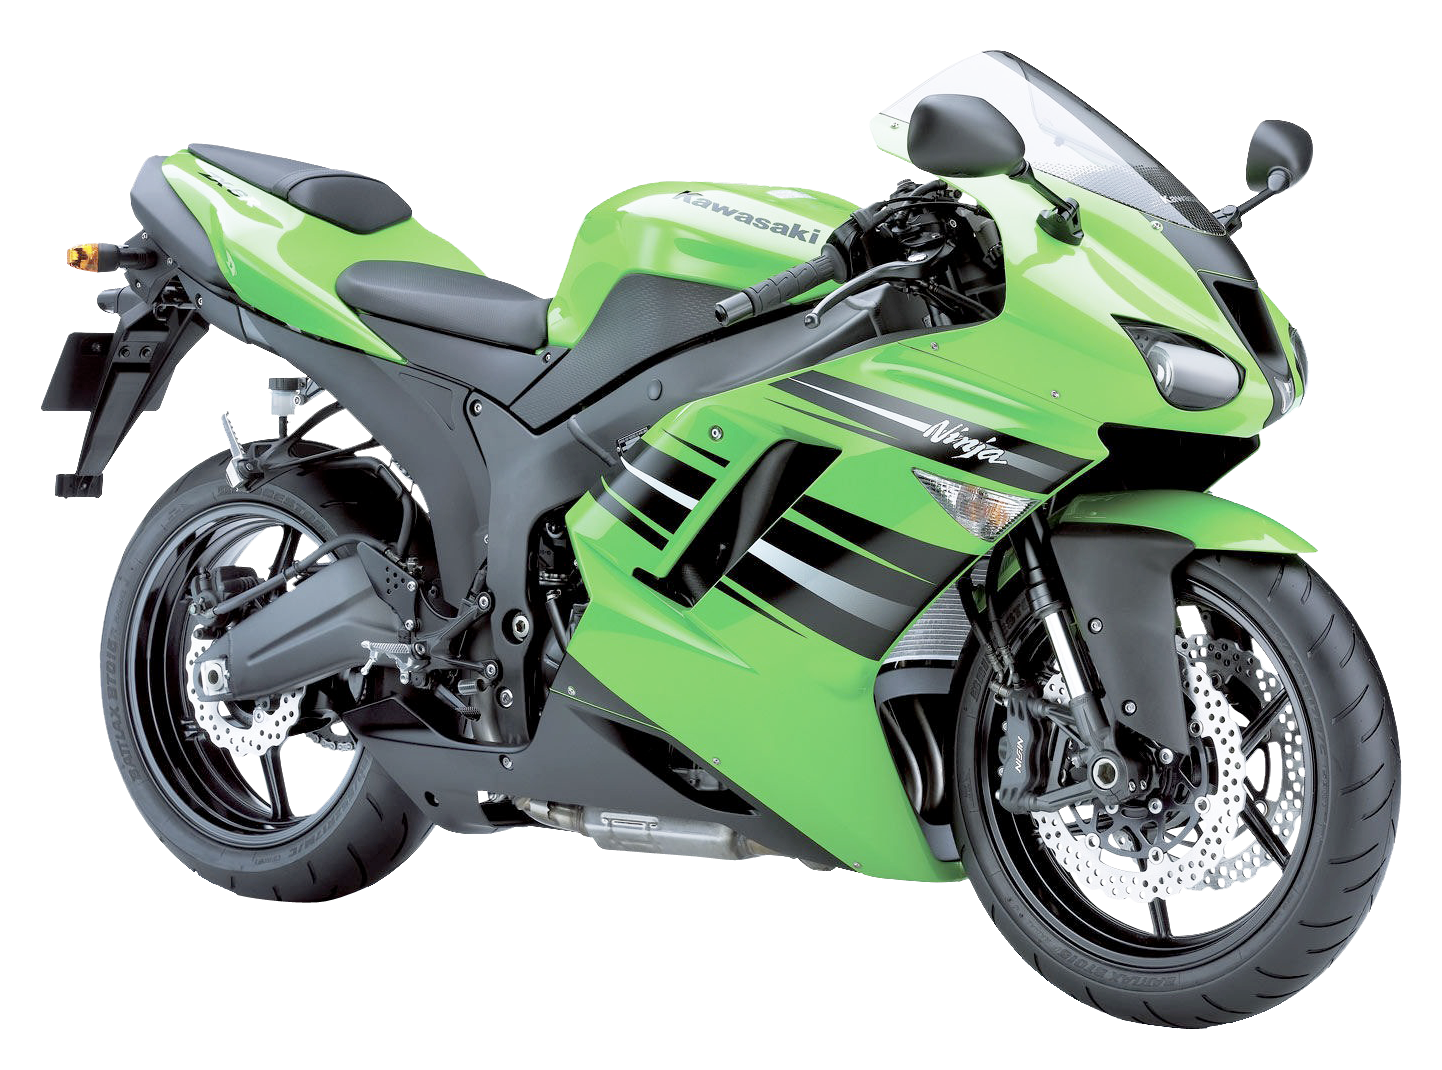 Kawasaki Ninja Green PNG Image - PurePNG | Free transparent CC0 PNG